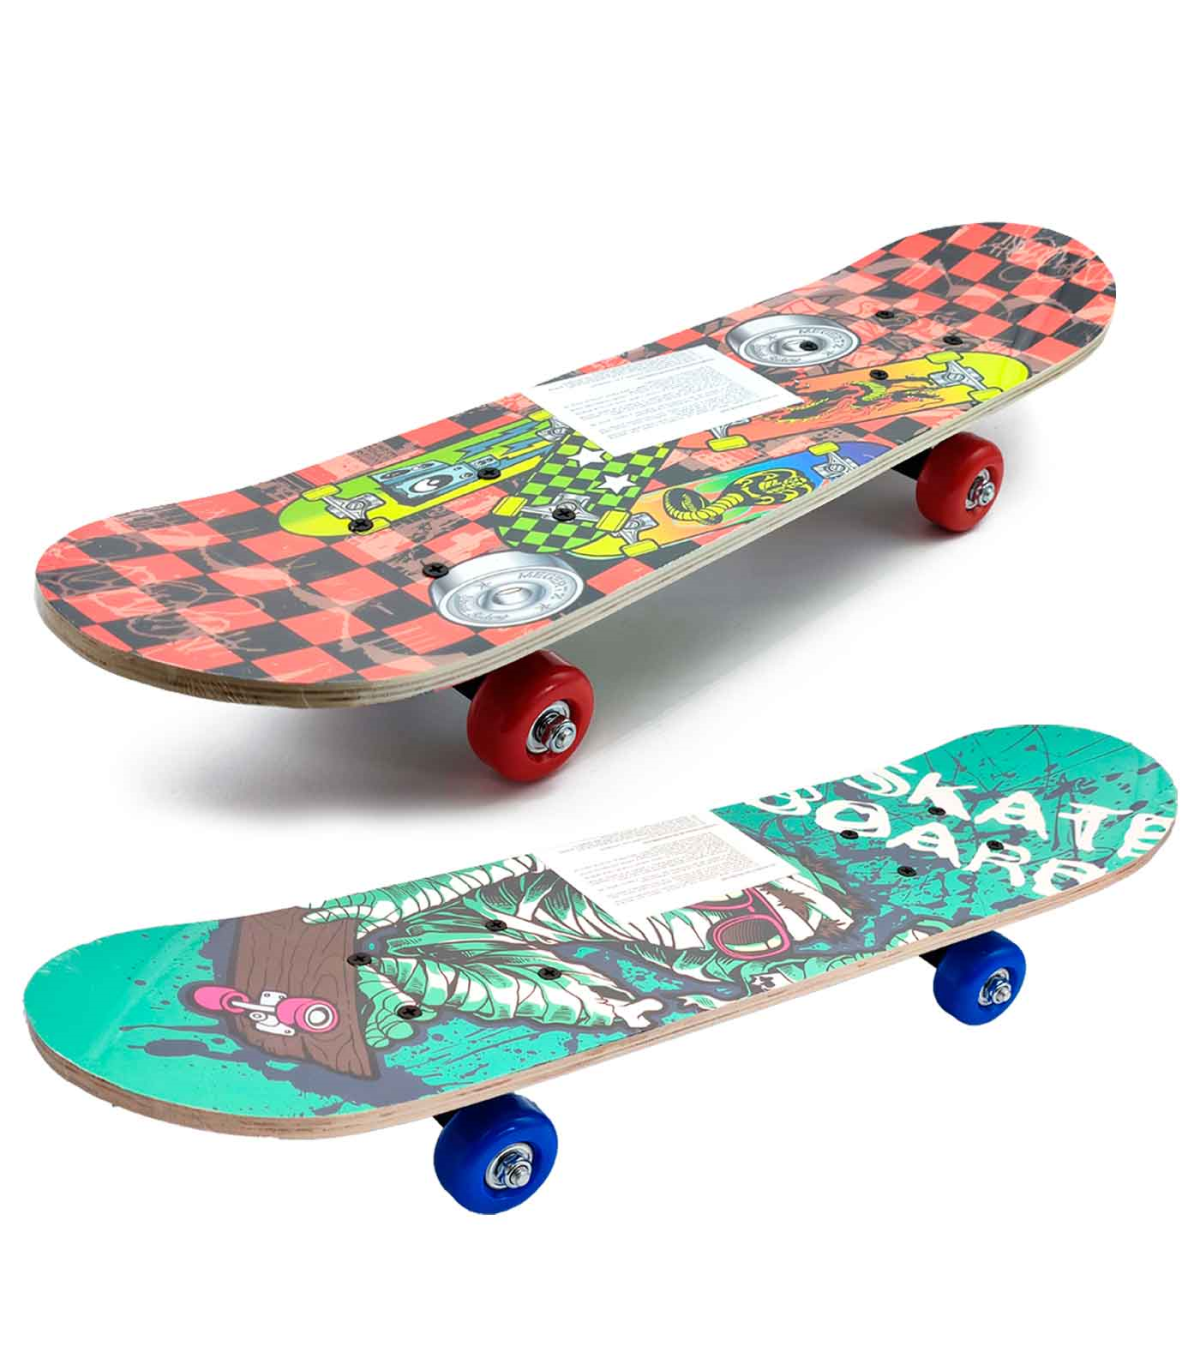 Skateboard para Patineta Niños  Envío Gratuito, 20% de Descuento! –